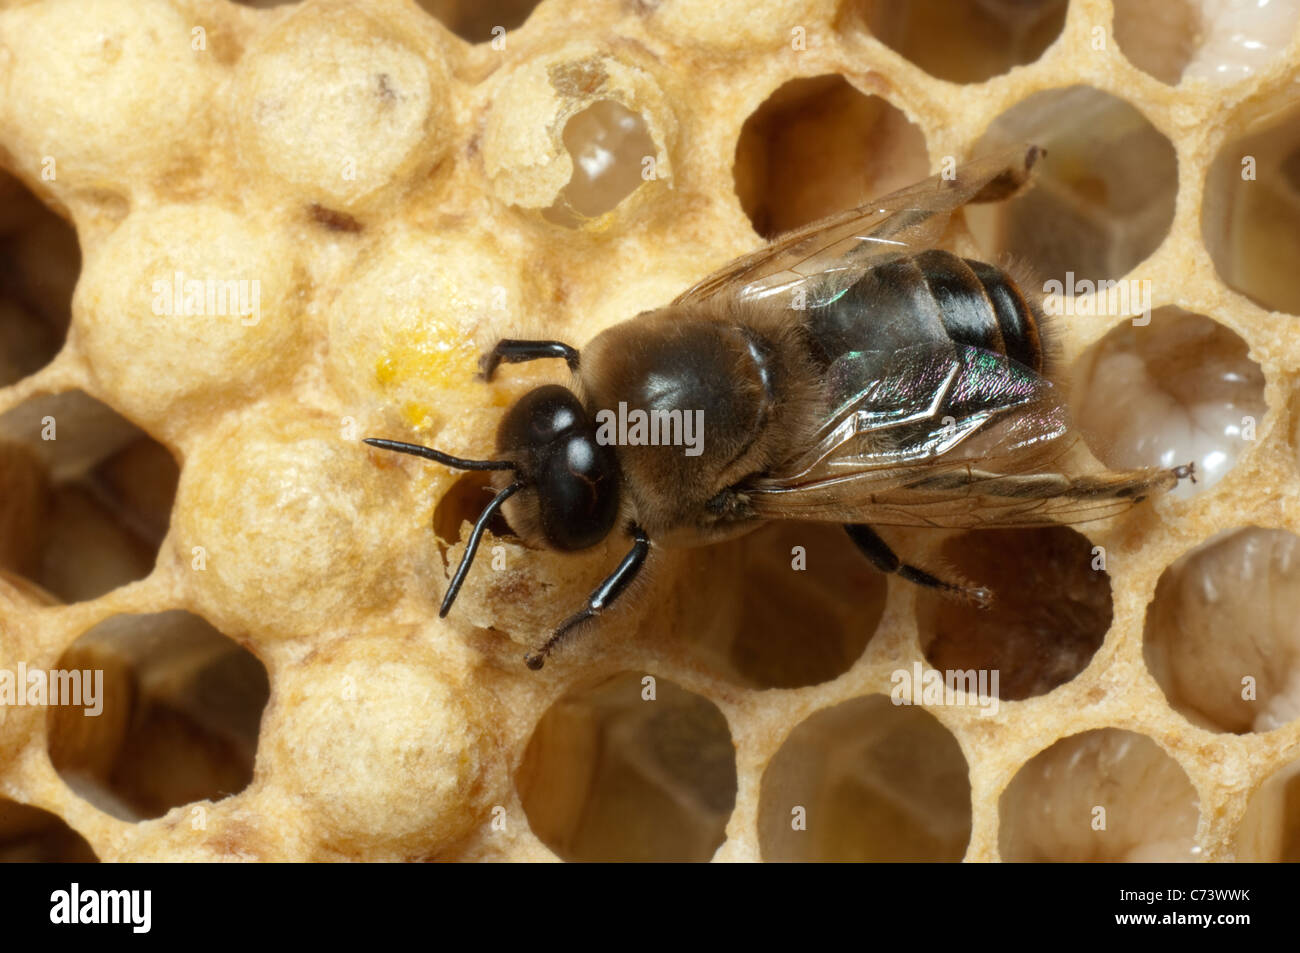 L'abeille européenne, l'abeille à miel (Apis mellifera, Apis mellifica). Drone (mâle) sur les cellules d'un rayon de miel. Banque D'Images